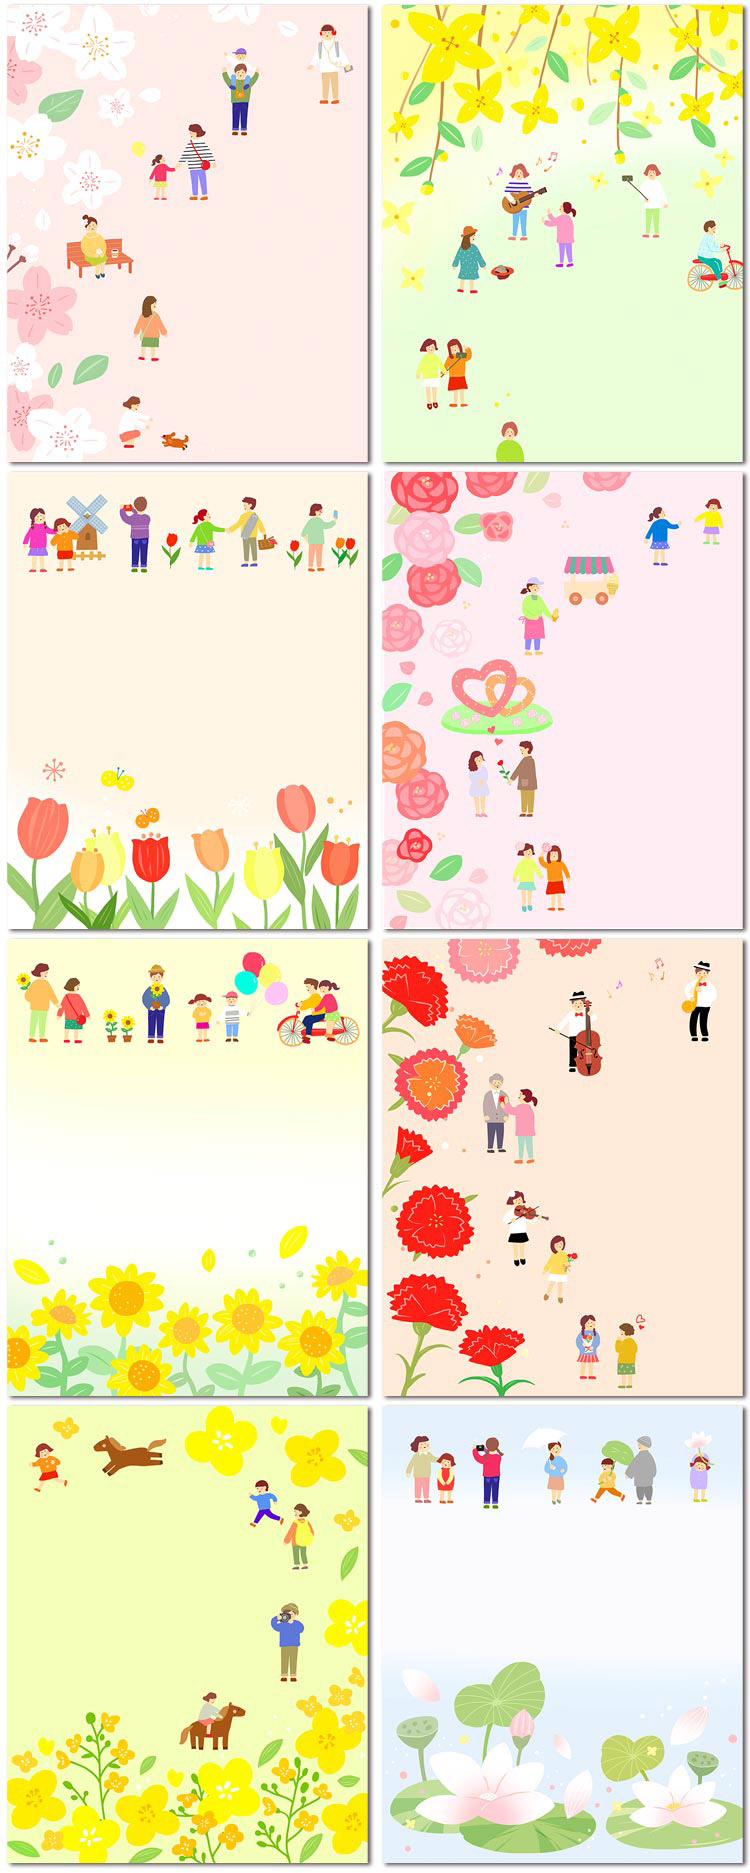 卡通户外郊游鲜花植物花卉赏花背景插画插图海报psd模板素材设计